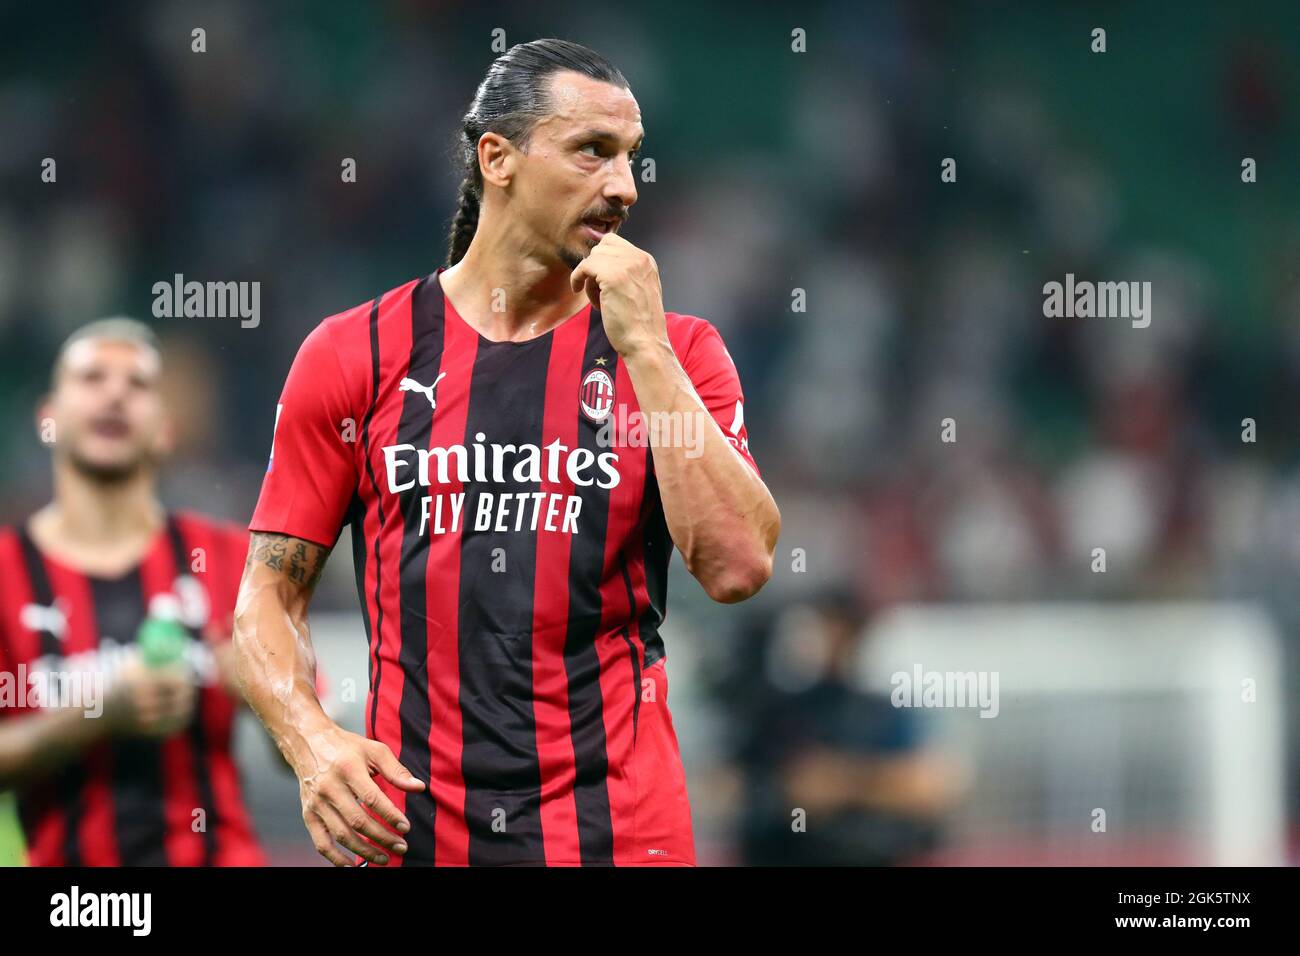 Mailand, Italien. 12. September 2021. Zlatan Ibrahimovic vom AC Mailand sieht während des Serie-A-Spiels zwischen dem AC Mailand und der SS Lazio aus. Stockfoto